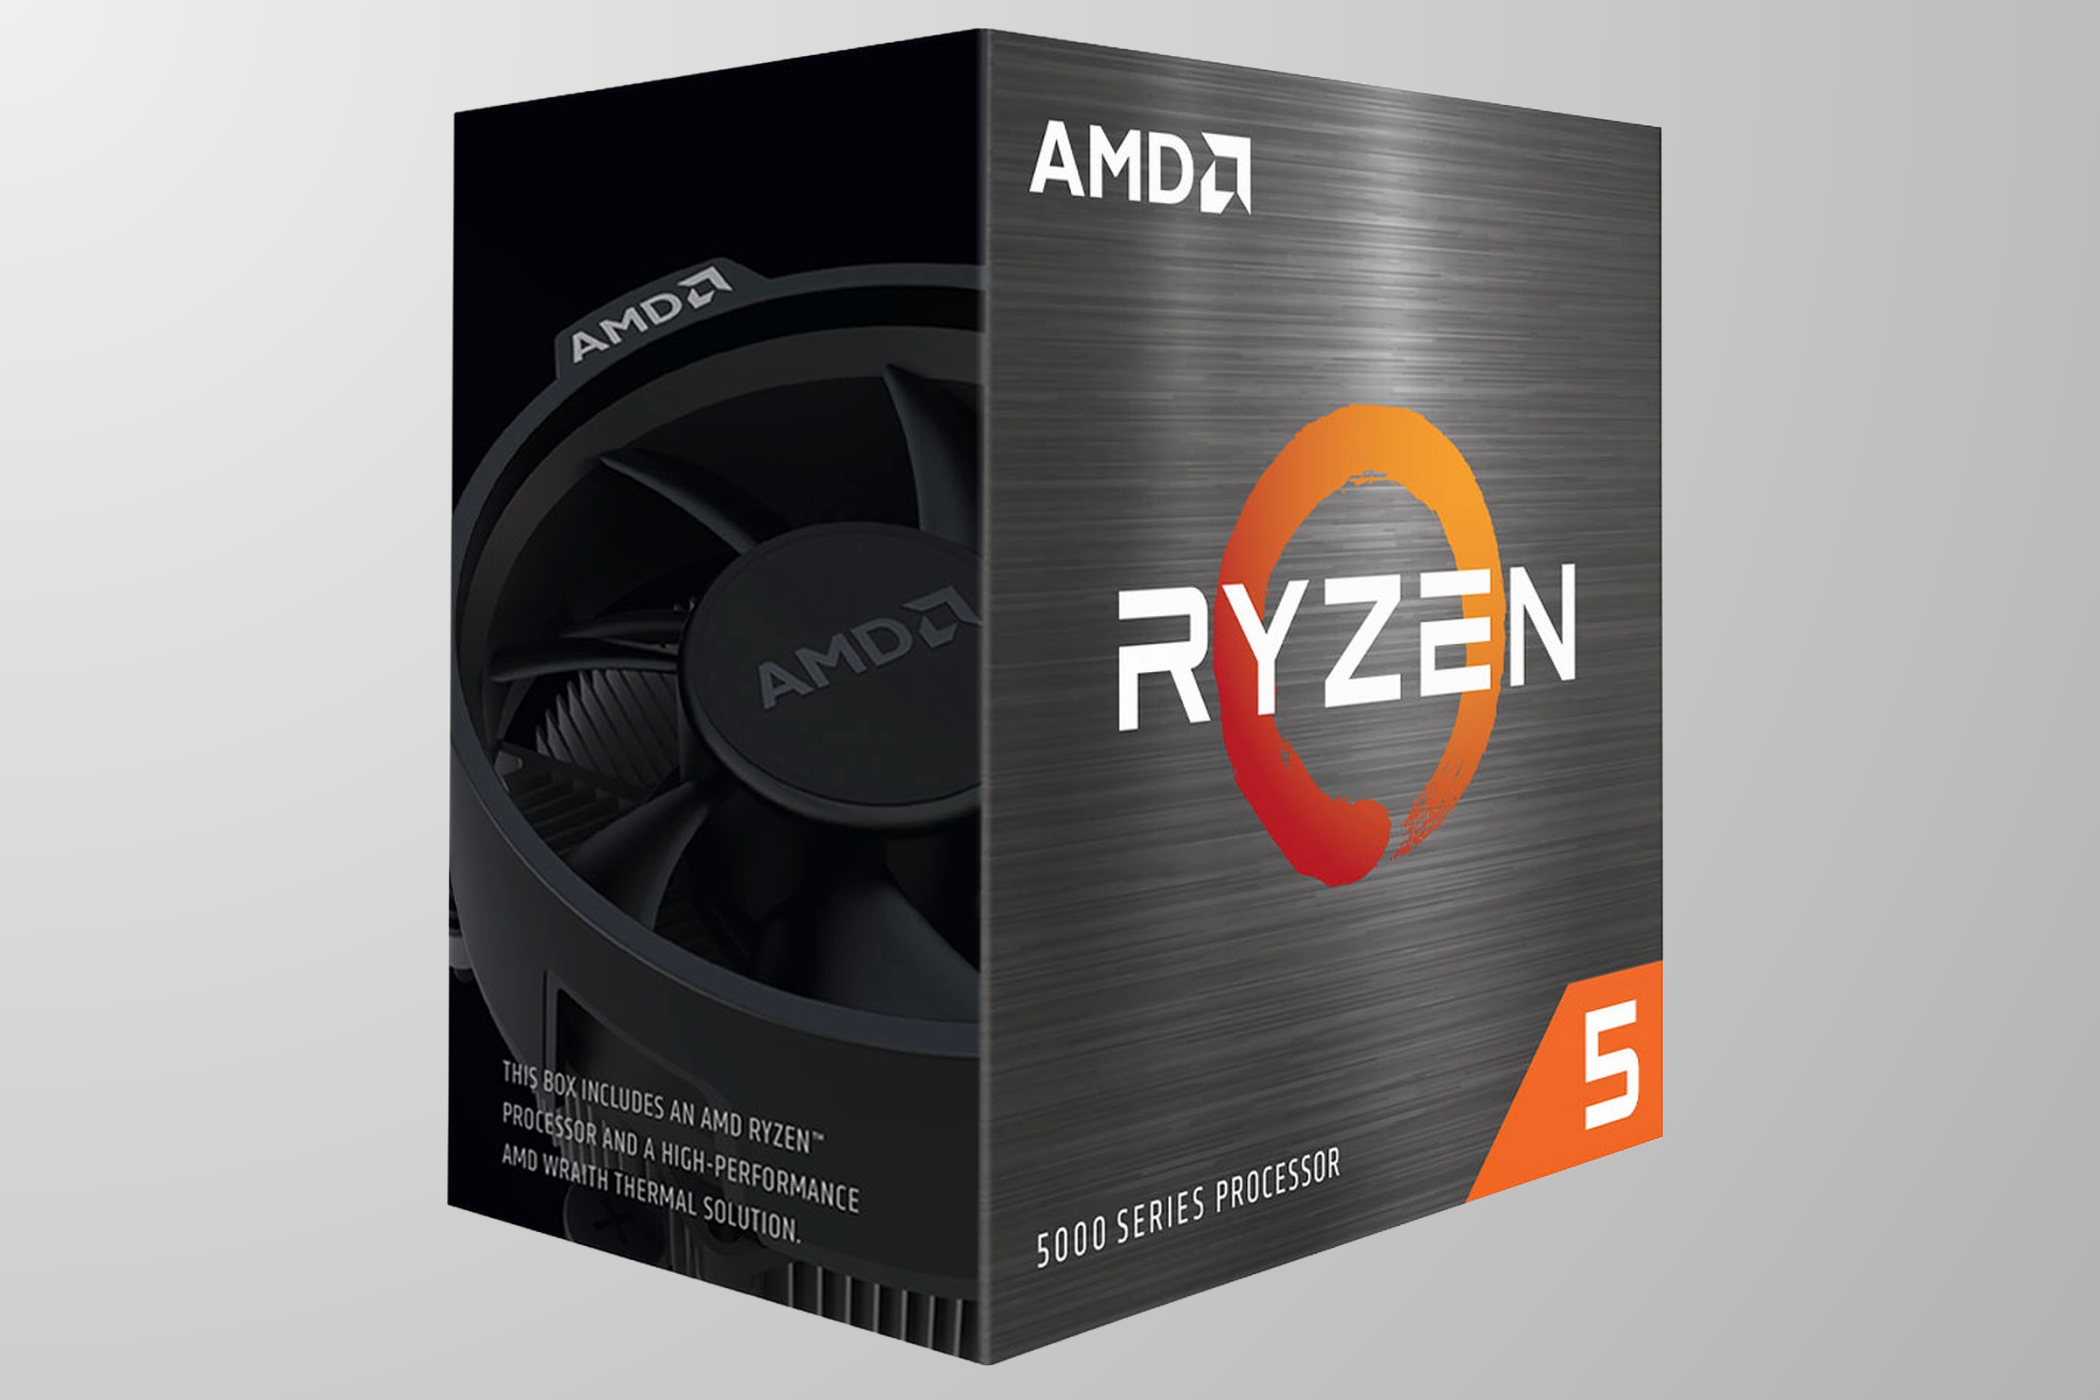 AMD Ryzen 5 5500 box against a grey background